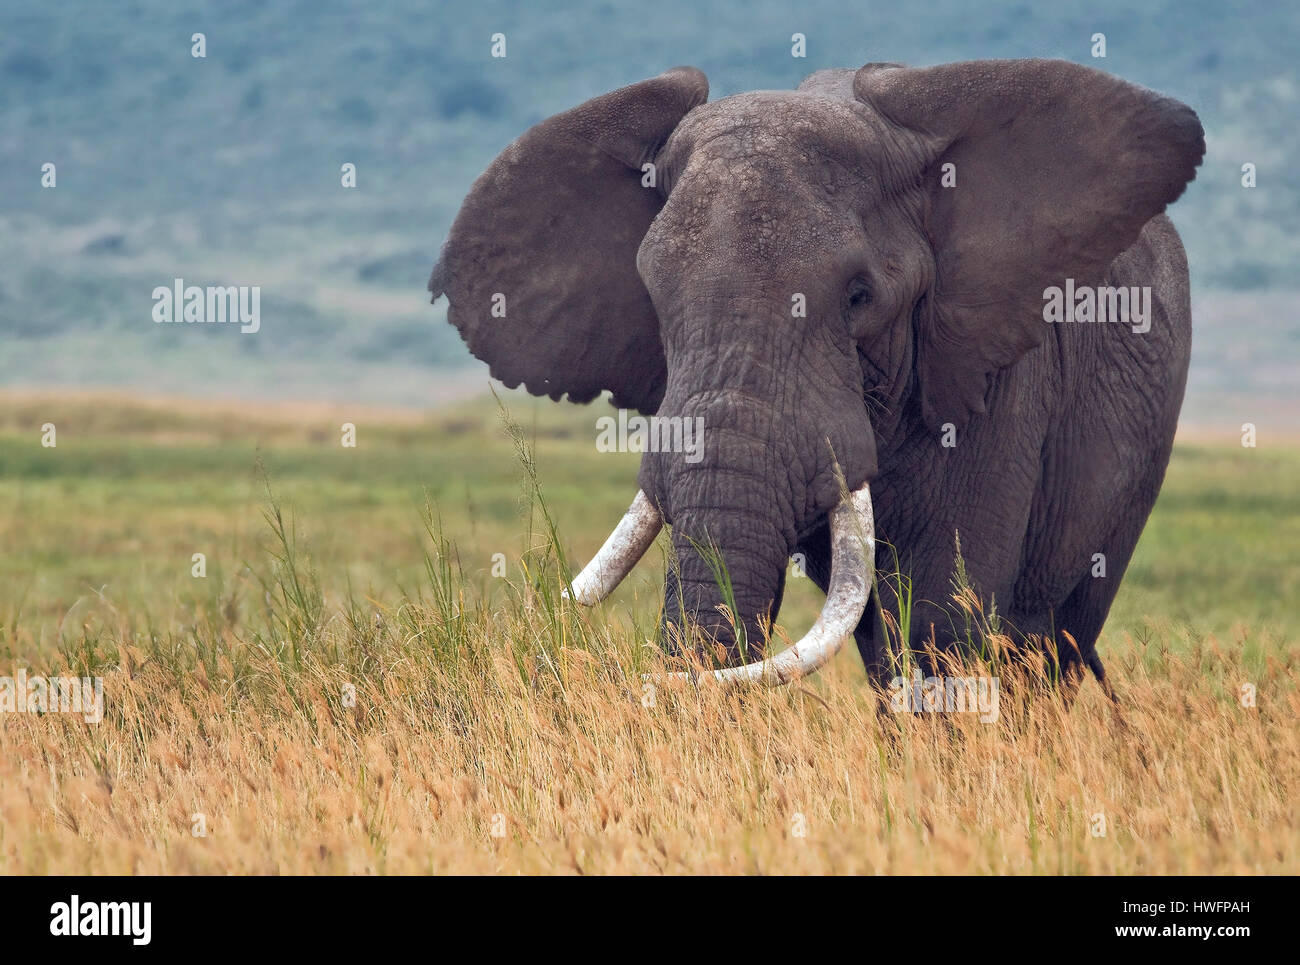 Old Bull Elefante africano Loxodonta africana, il cratere di Ngorongoro, Tanzania. Questo elefante è di 60-70 anni e vivo, come tutti gli elefanti in ng Foto Stock